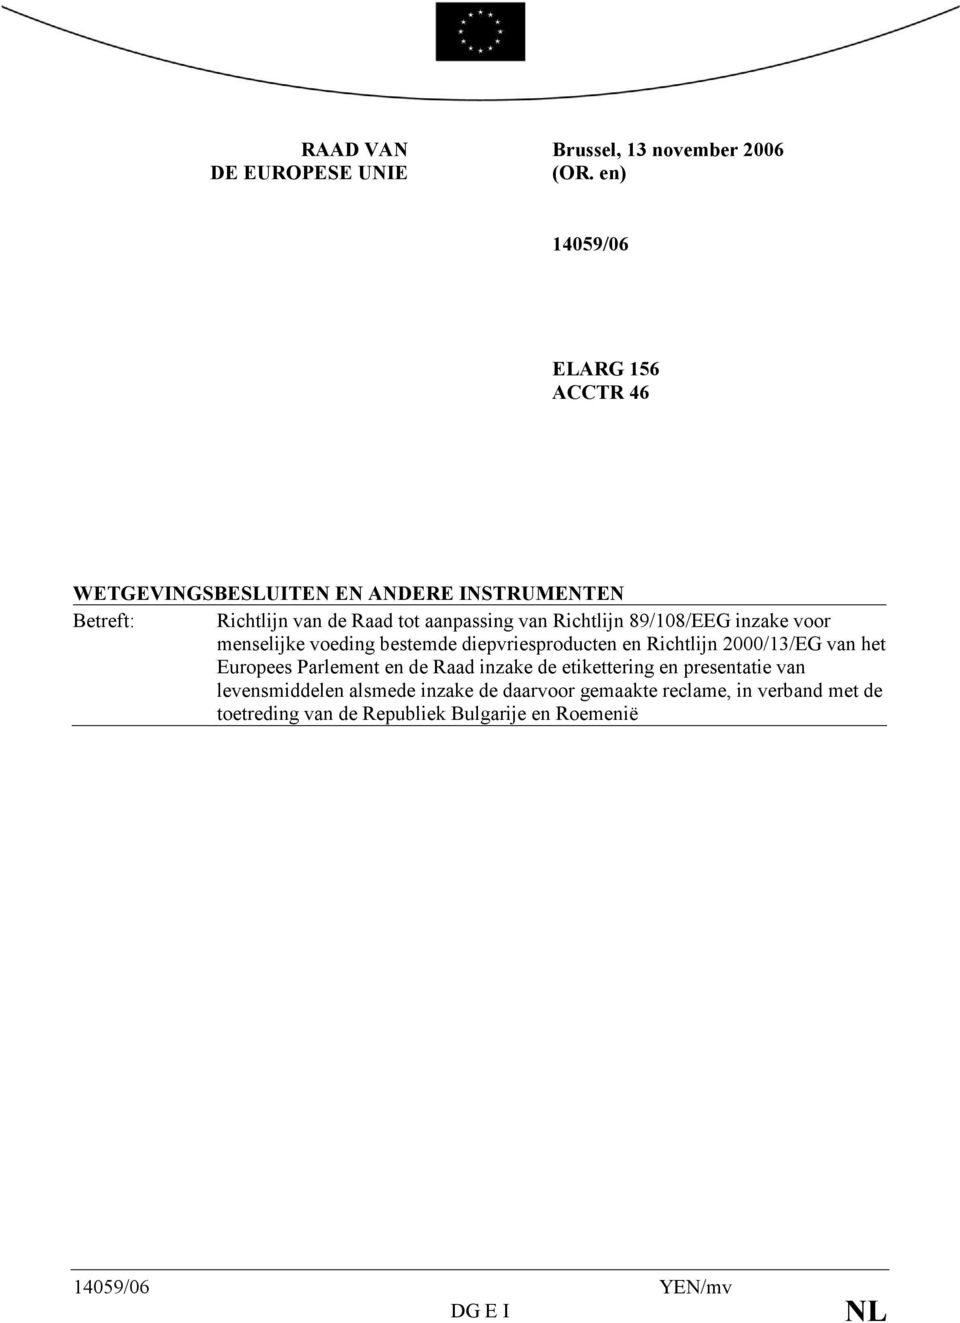 Richtlijn 89/108/EEG inzake voor menselijke voeding bestemde diepvriesproducten en Richtlijn 2000/13/EG van het Europees